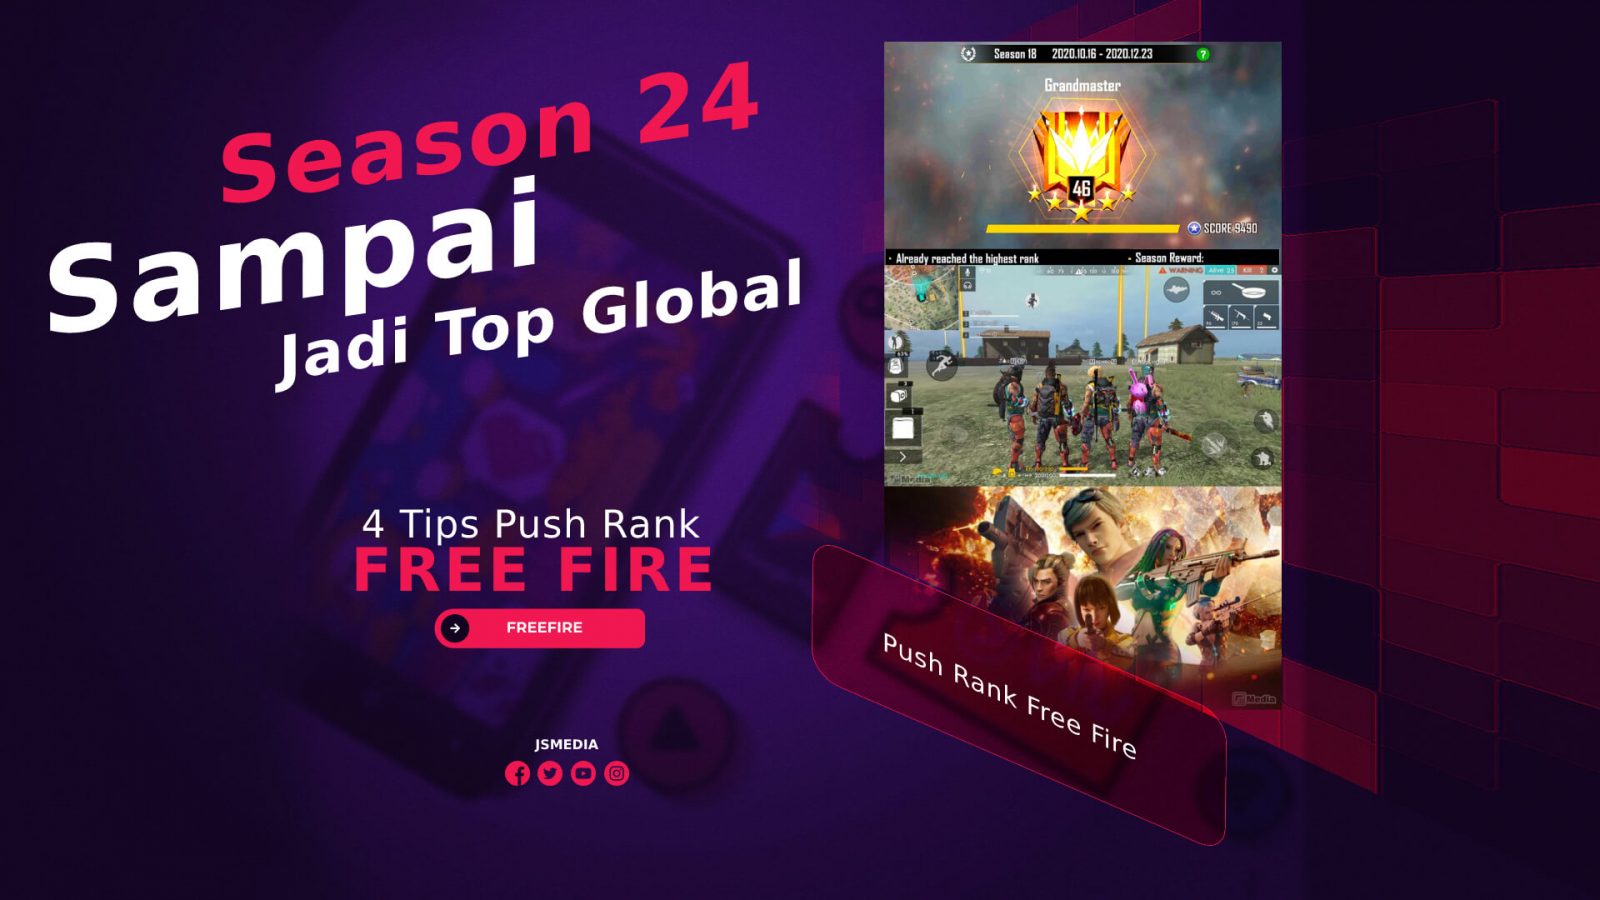 Tips Push Rank Free Fire Season 24 Sampai Jadi Top Global